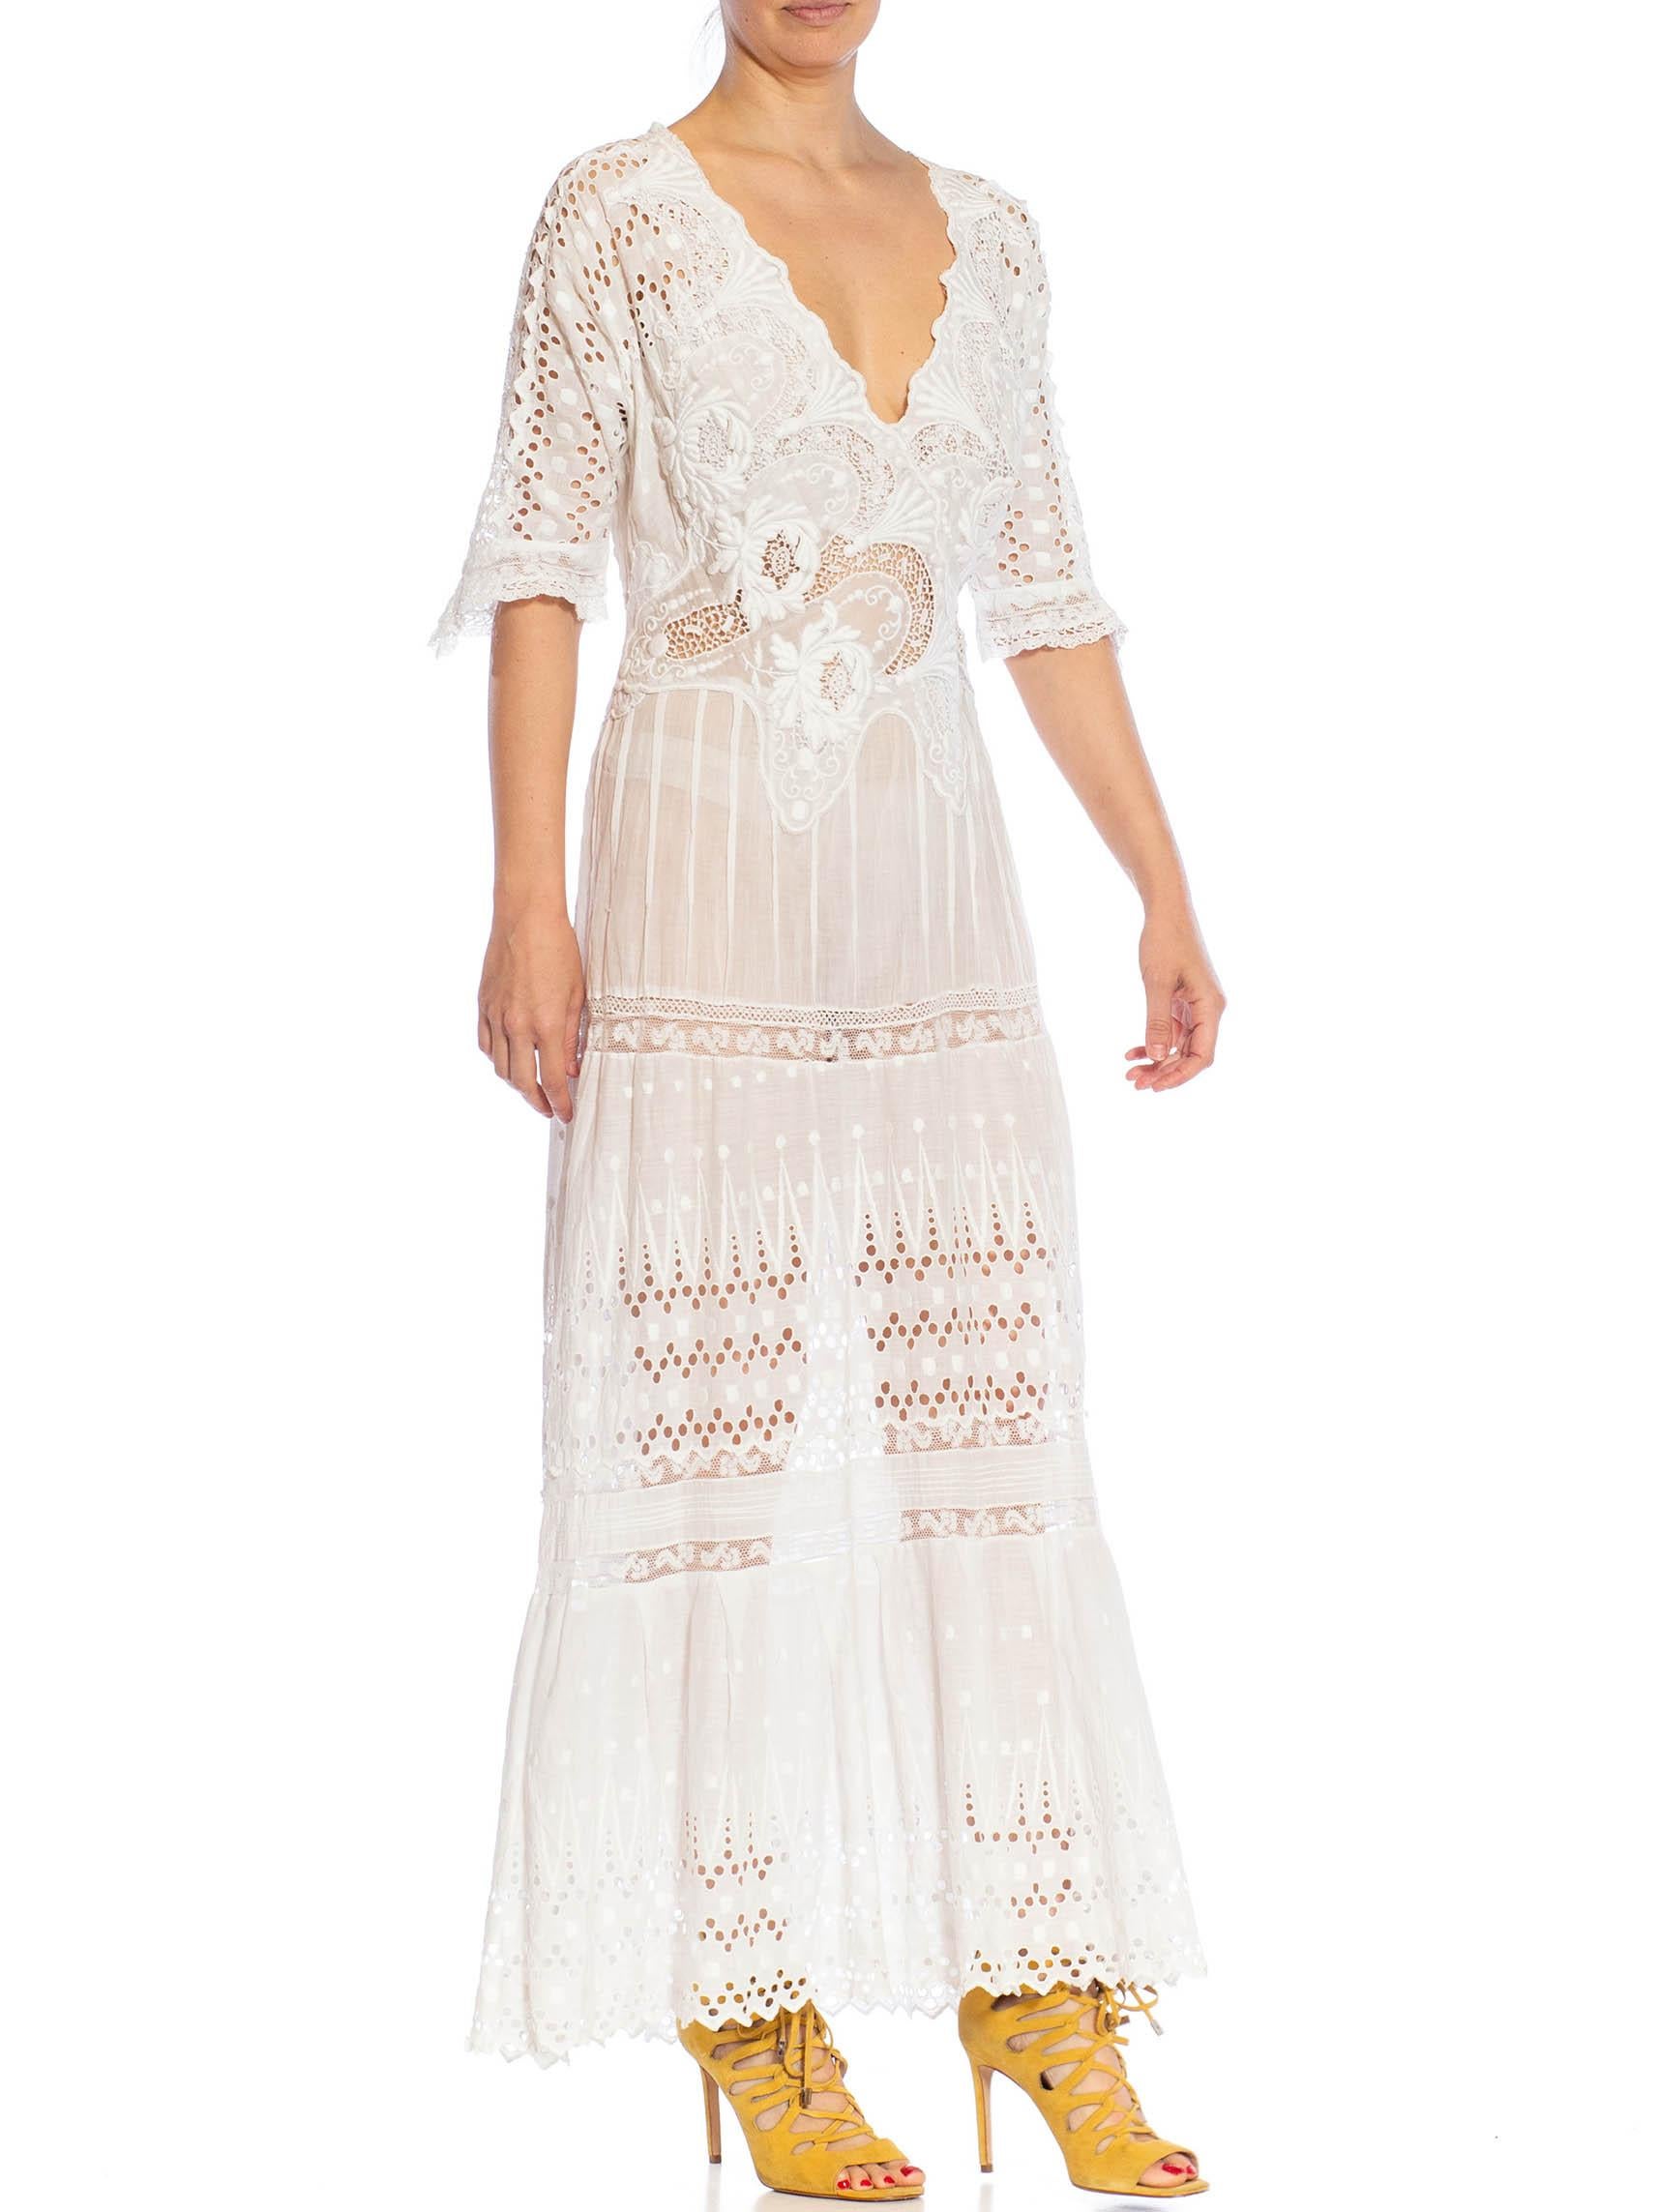 MORPHEW ATELIER White Organic Cotton Antique Lace Dress For Sale 3